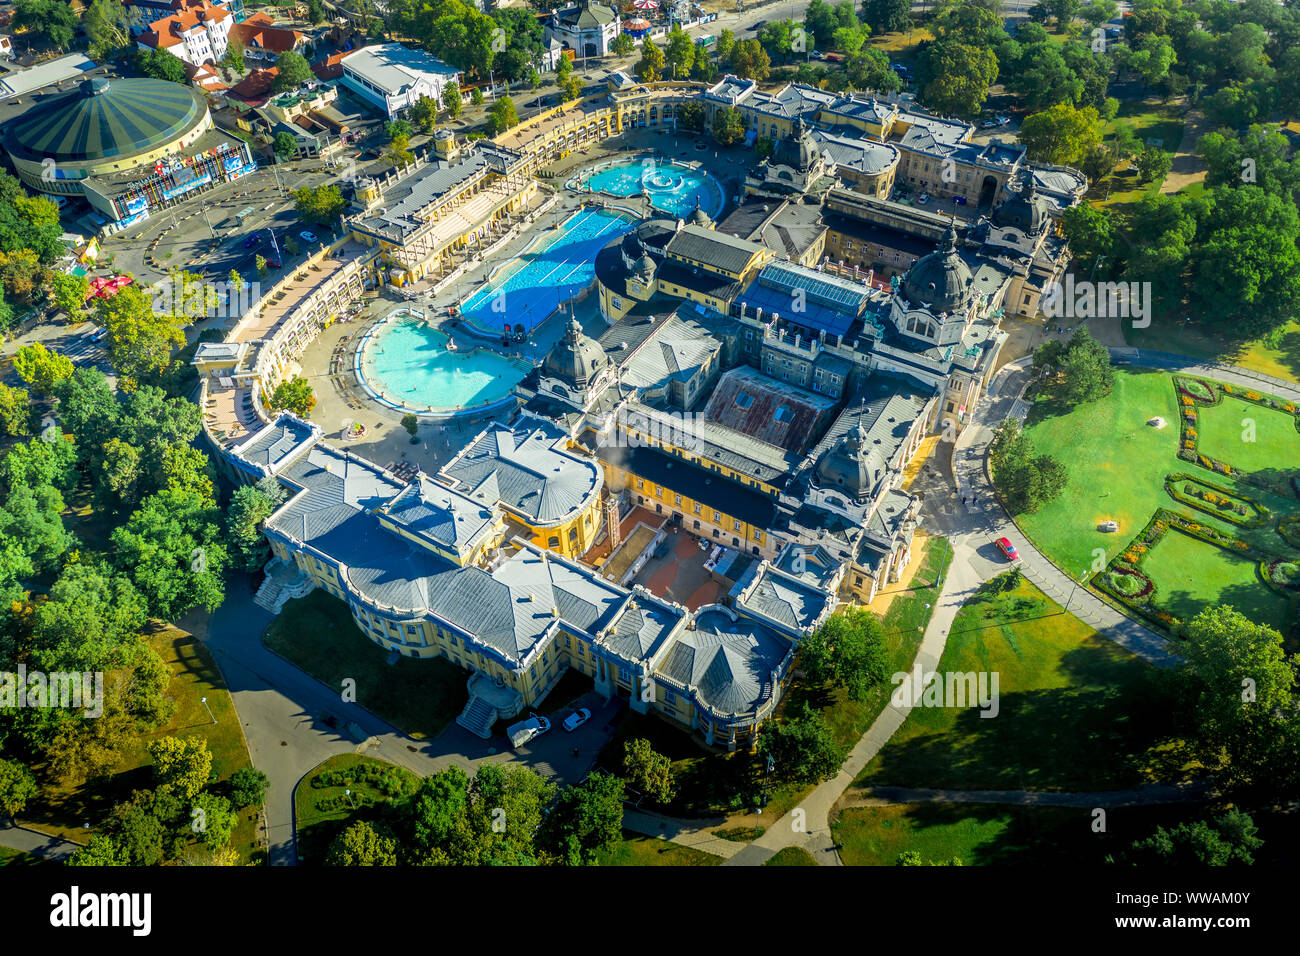 Vue aérienne de spa Szechenyi bain thermal avec zoo futuriste à Budapest Hongrie Banque D'Images